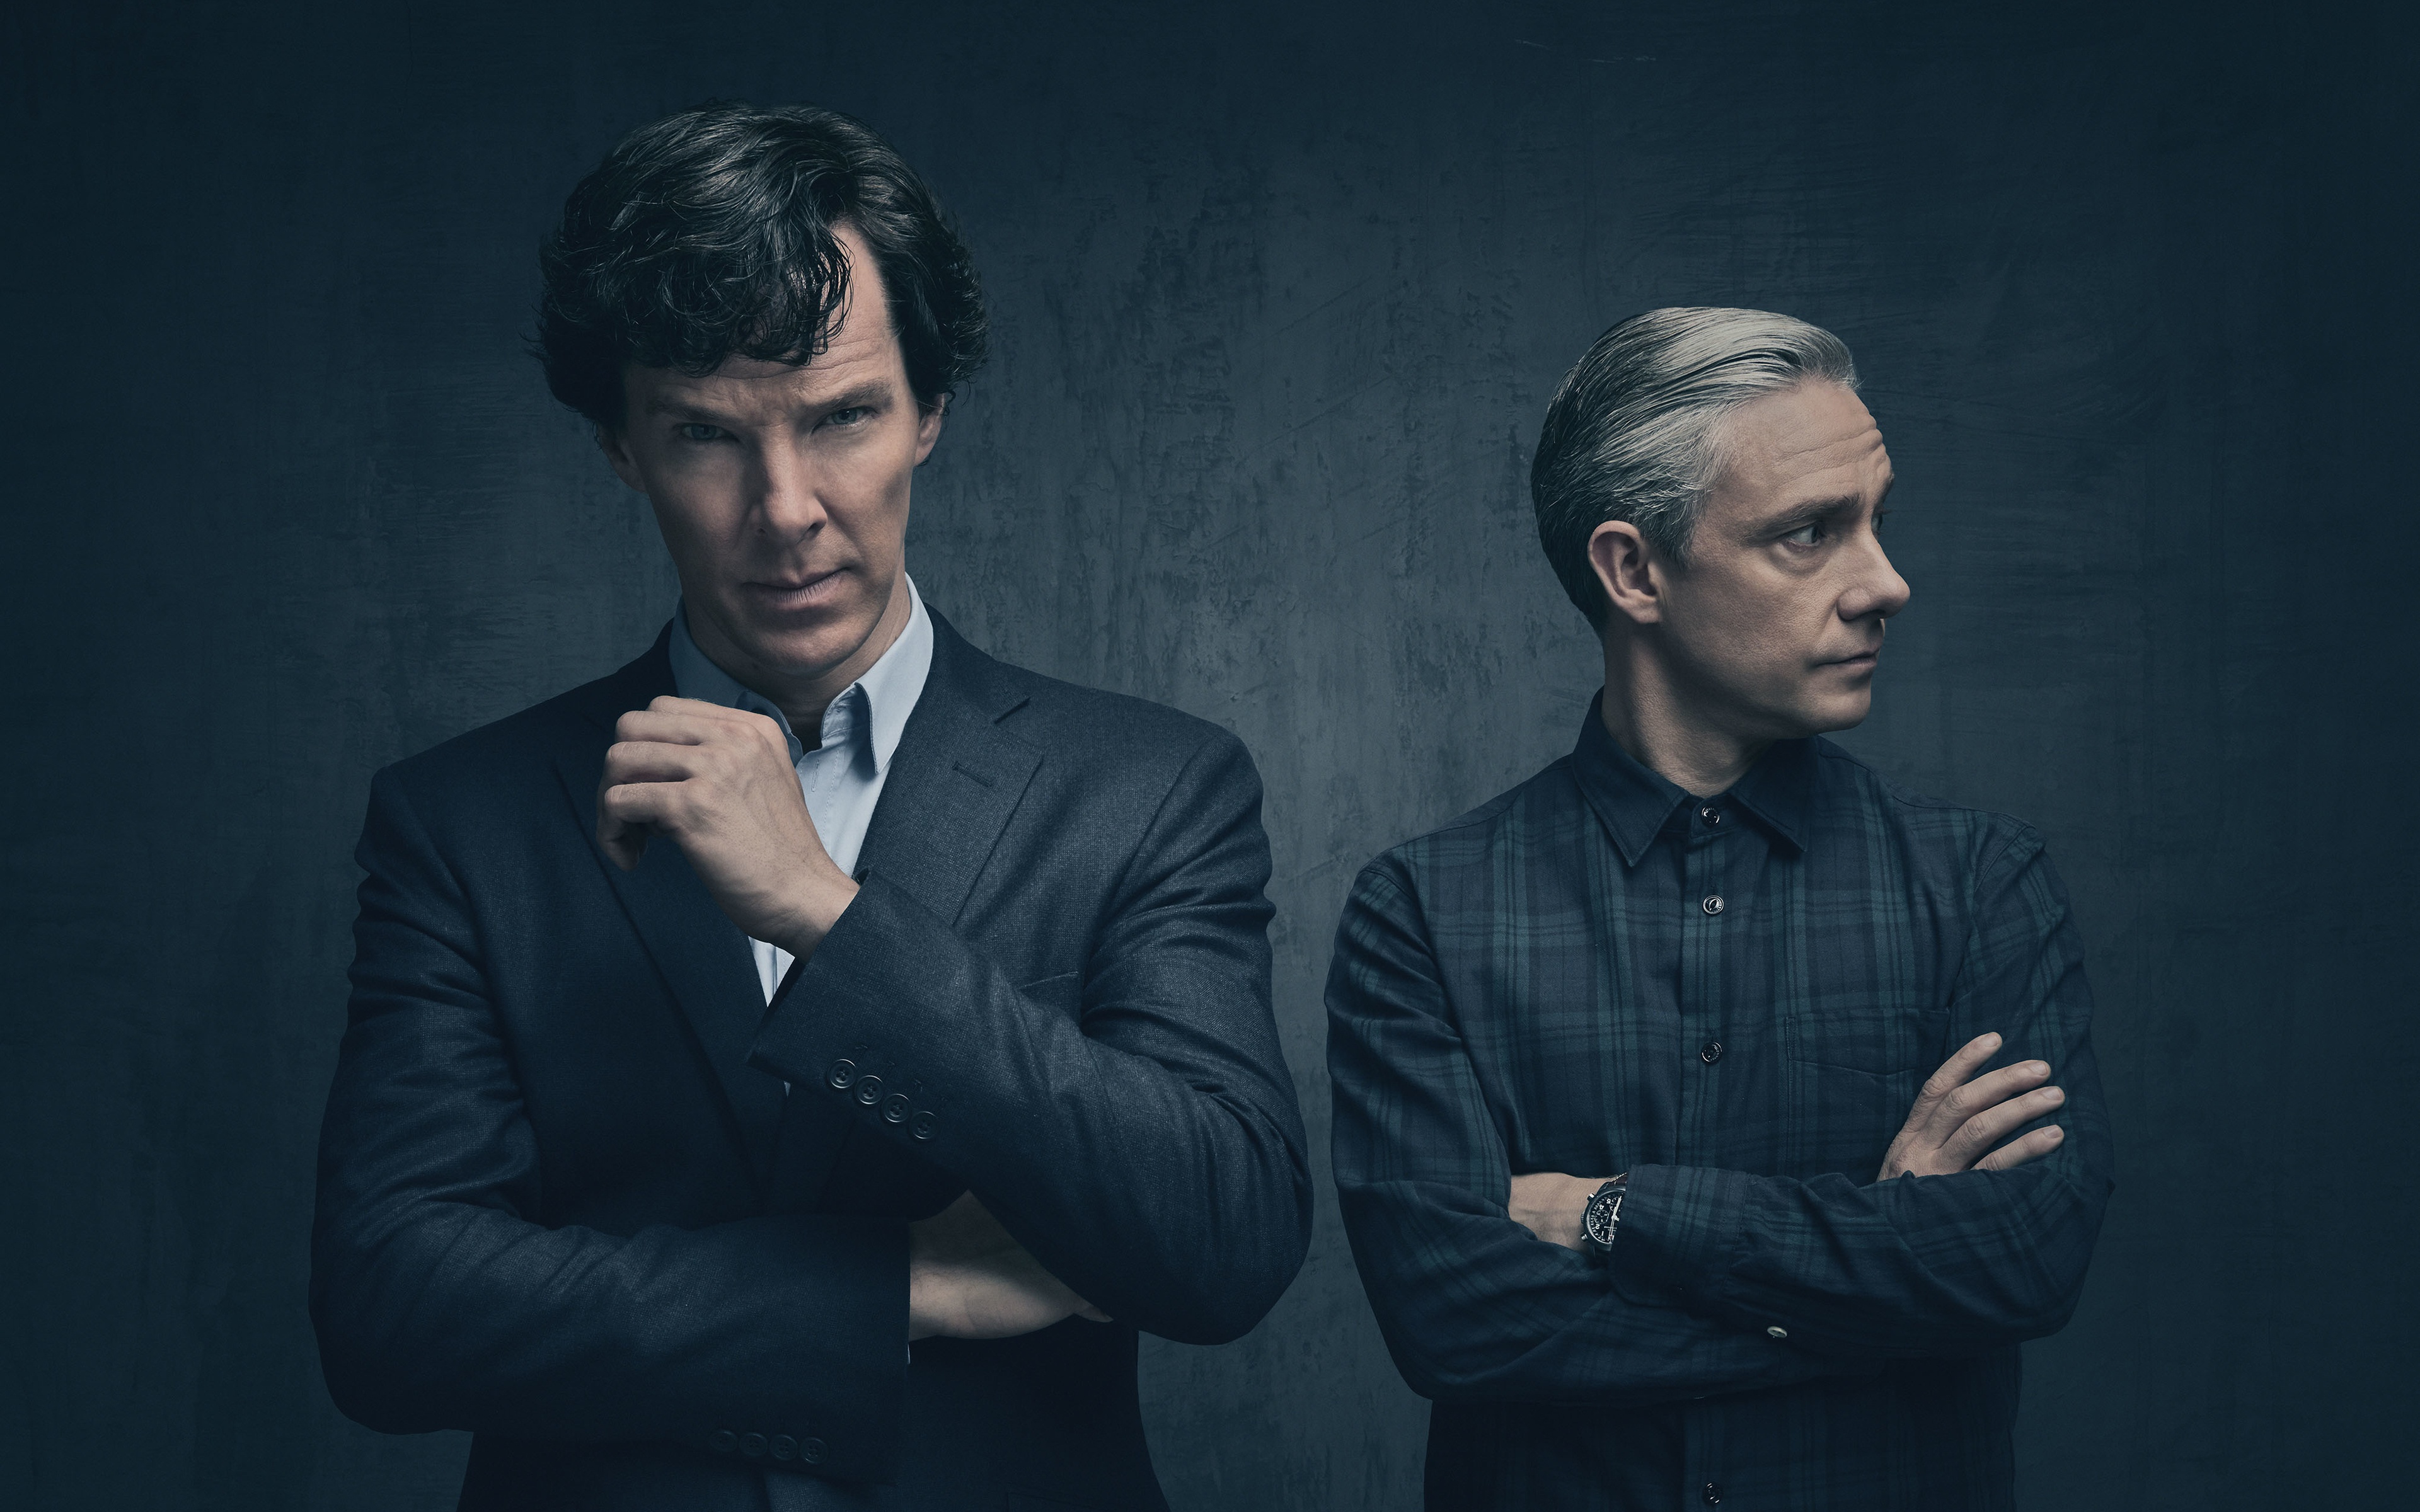 壁紙 3840x2400 男性 ベネディクト カンバーバッチ Sherlock Season 4 Martin Freeman 映画 有名人 ダウンロード 写真